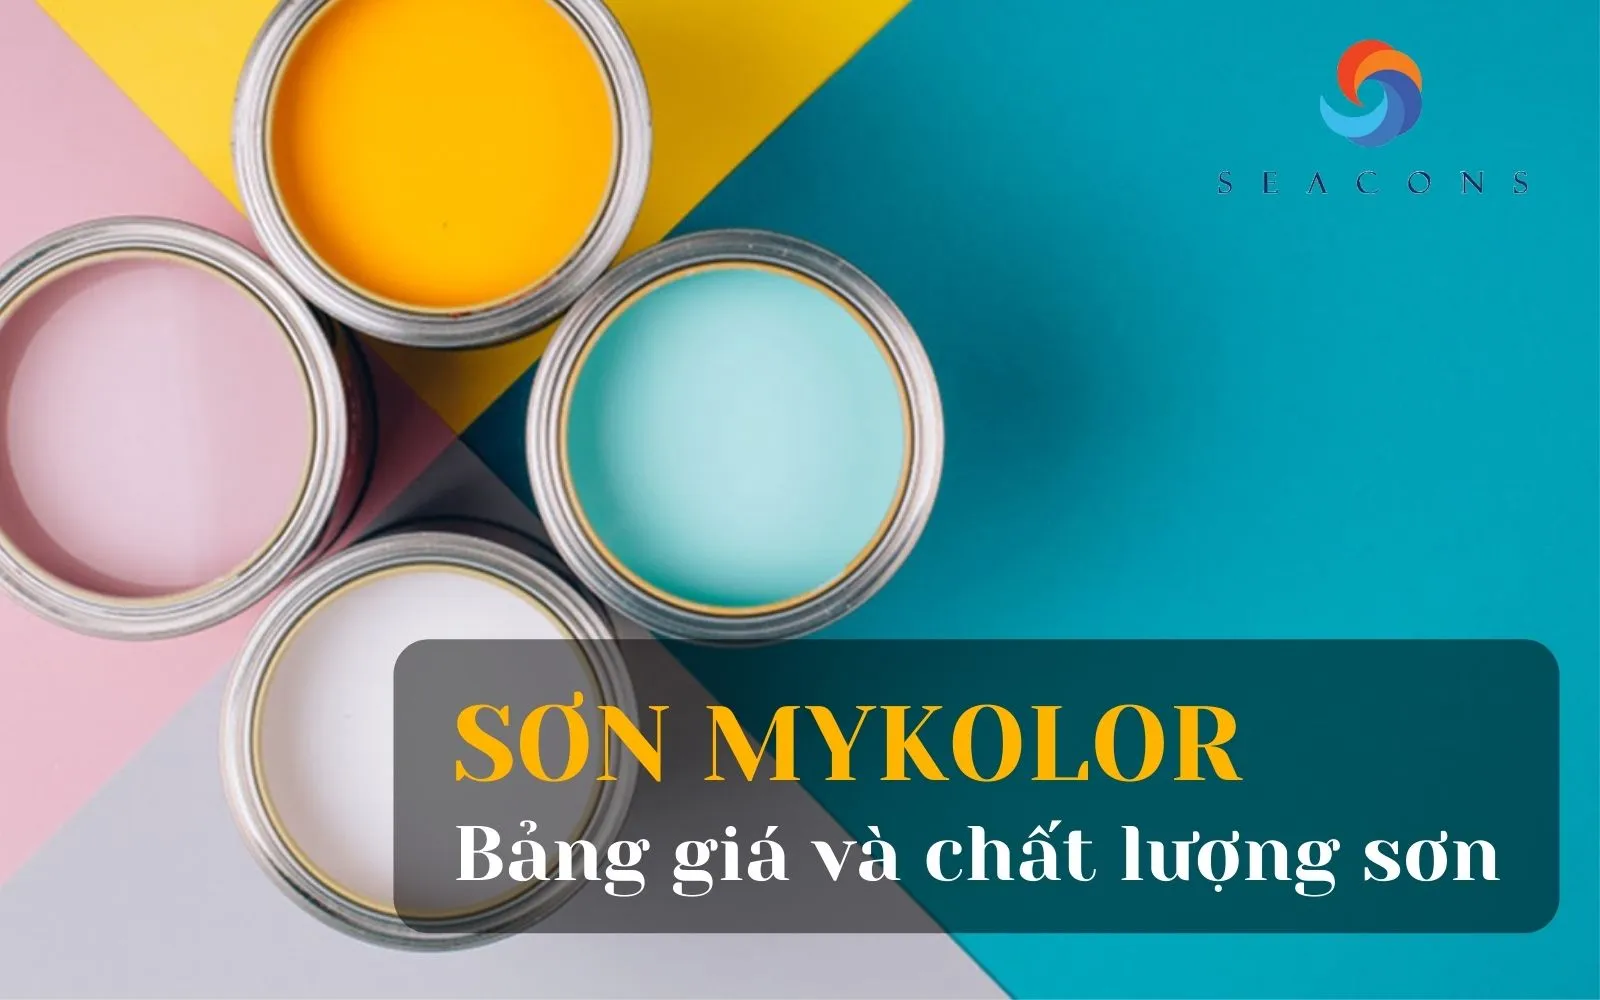 Sơn Mykolor: Sơn Mykolor là thương hiệu sơn nổi tiếng tại Việt Nam với độ bền cao và màu sắc tươi sáng. Xem hình ảnh liên quan đến Sơn Mykolor để trải nghiệm sự đẹp của sơn này.